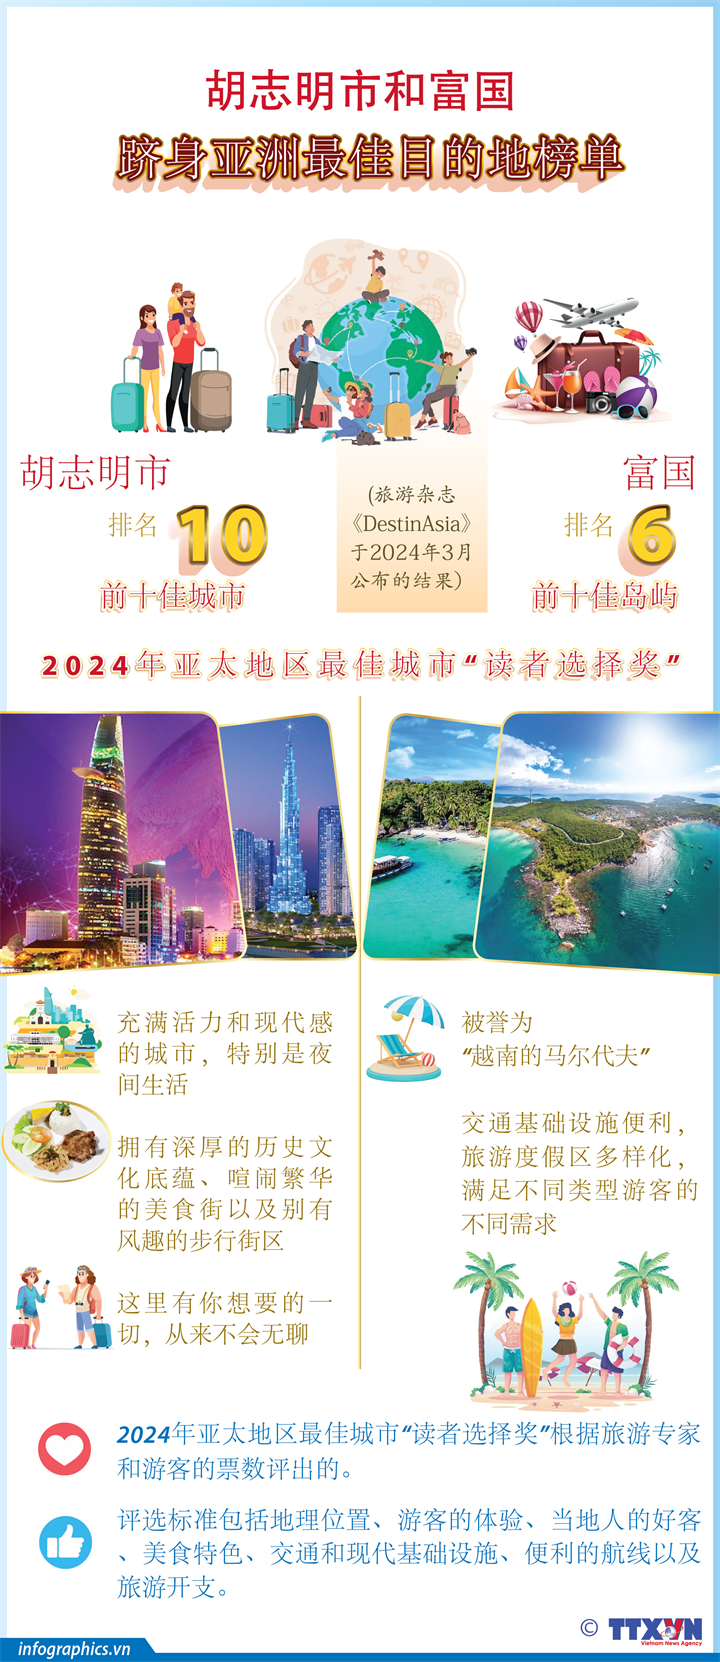 图表新闻：胡志明市和富国跻身亚洲最佳目的地榜单